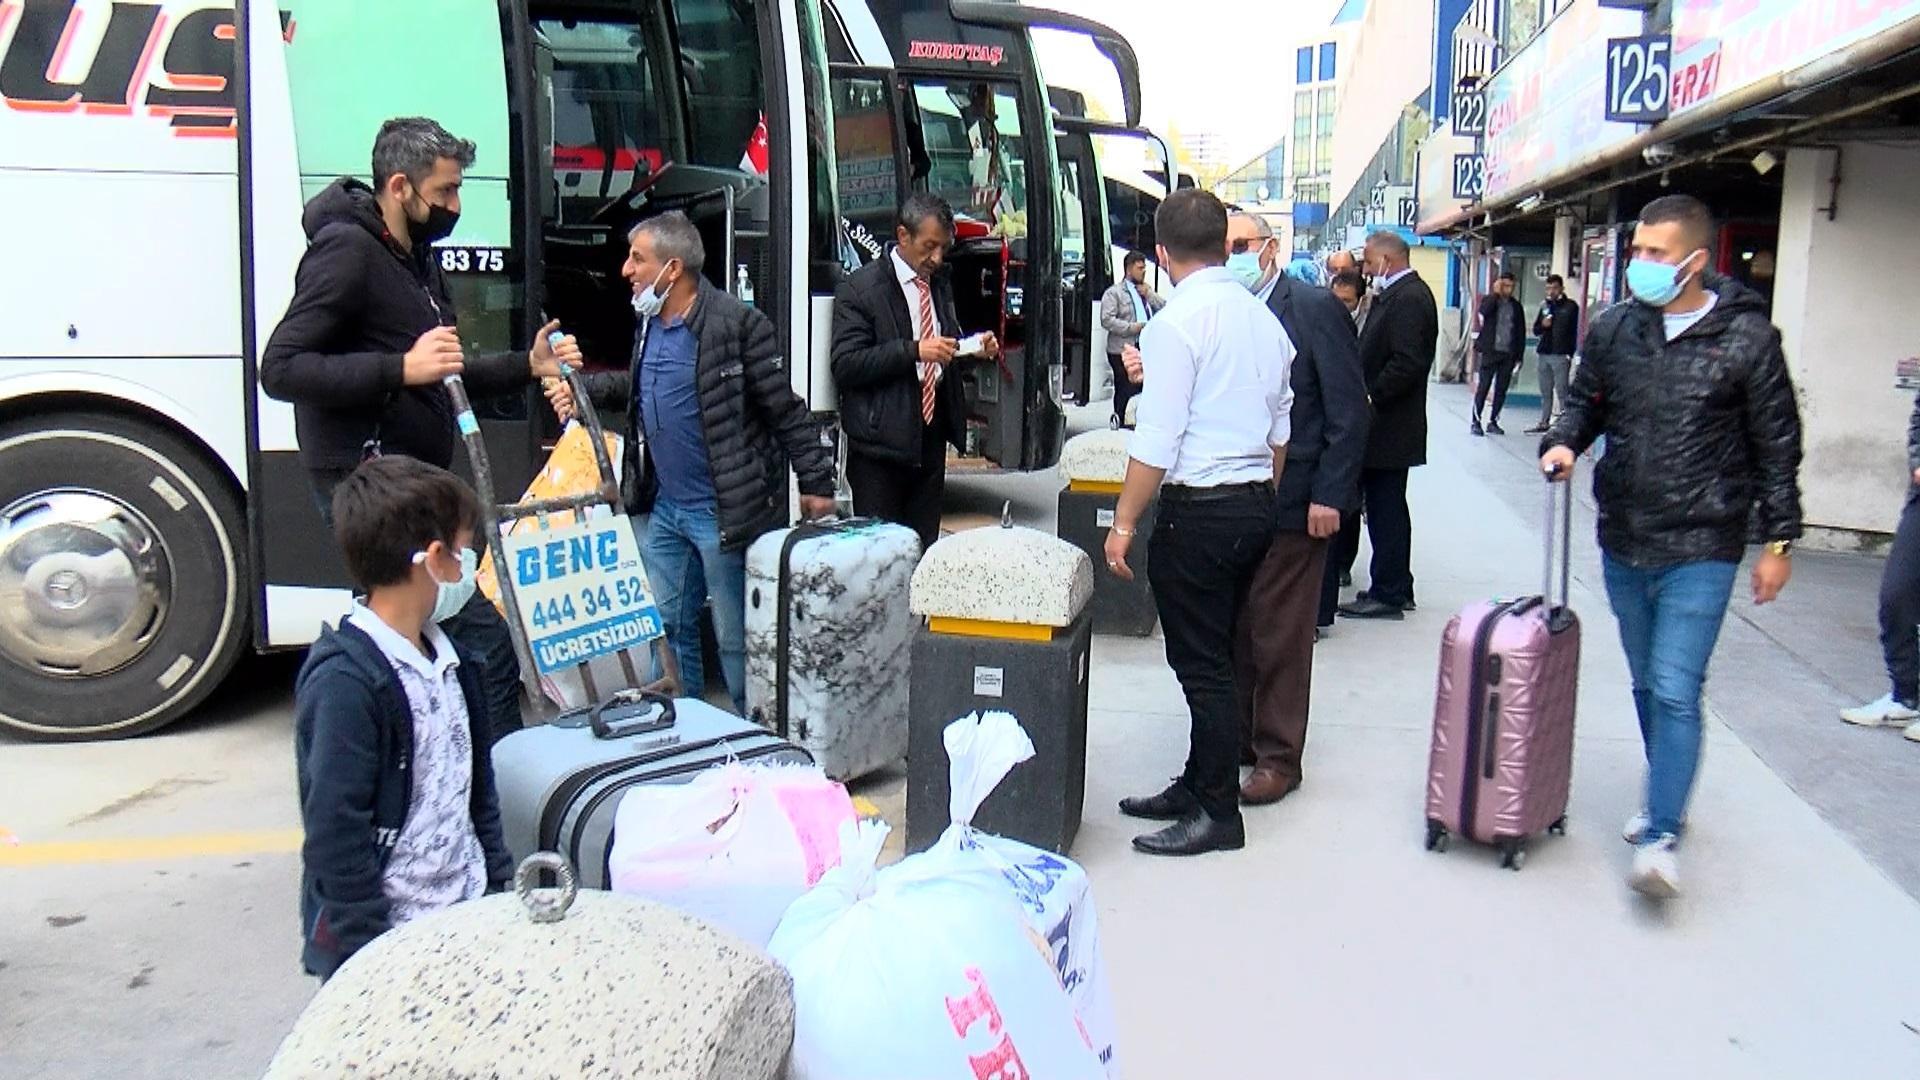 Otogarda bilet satış sistemleri kilitlendi, İstanbuldan göç başladı